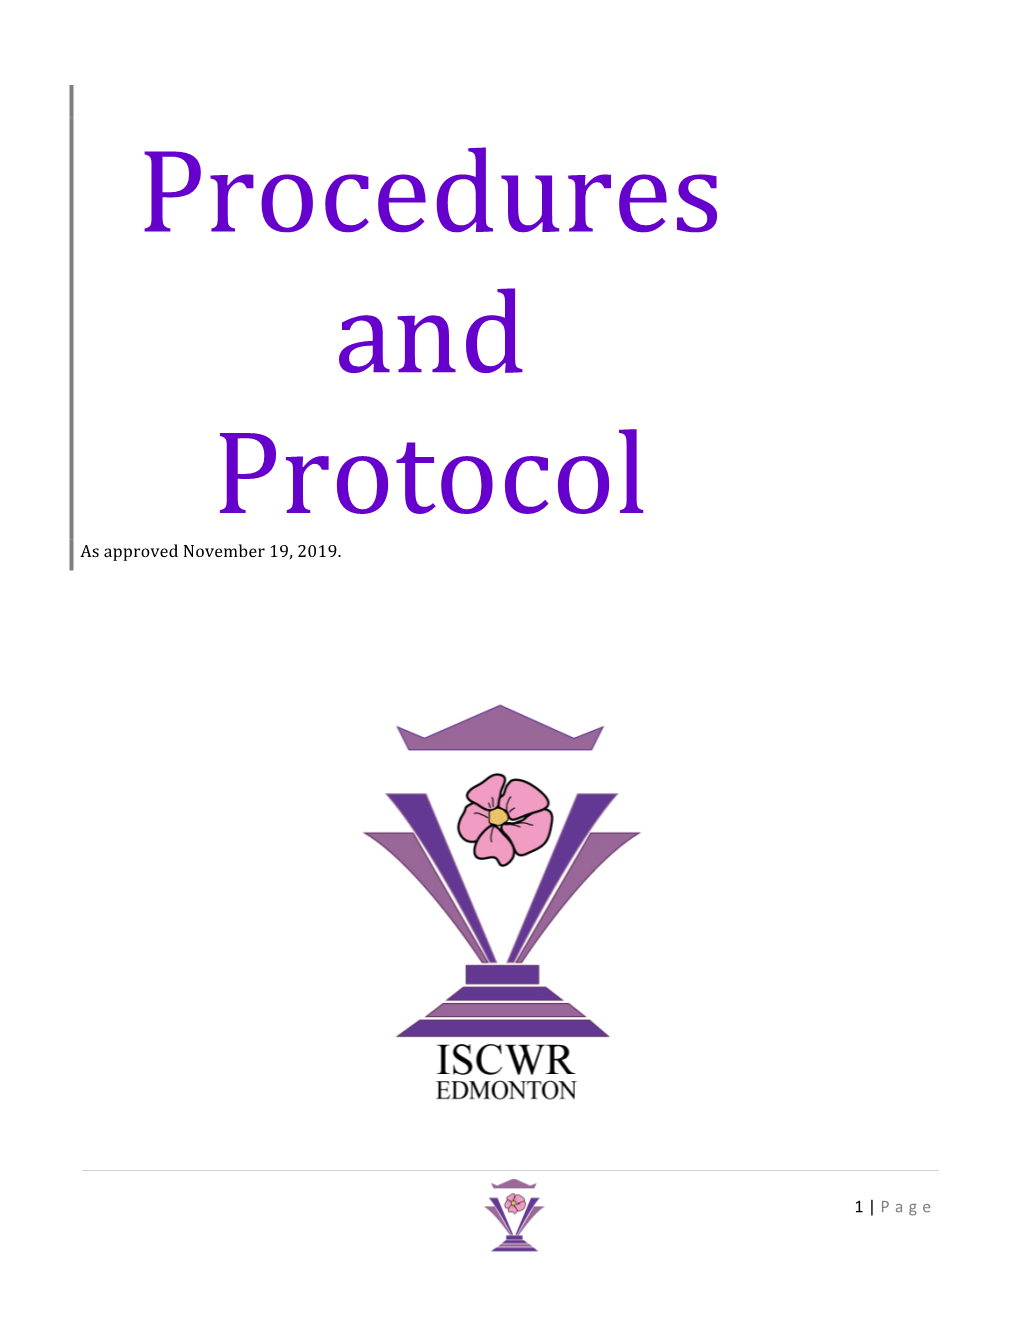 Procedures & Protocols